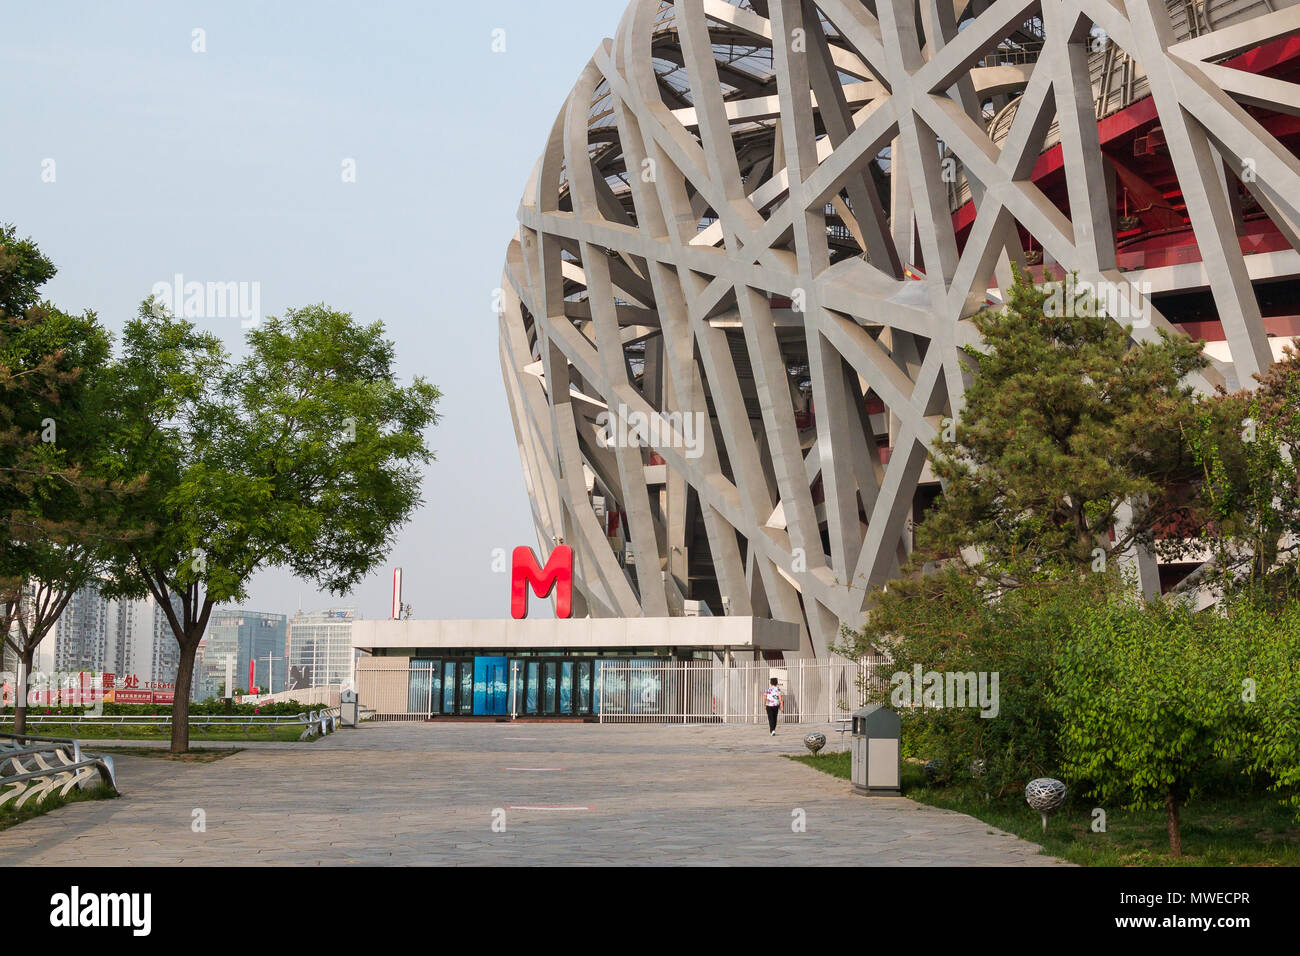 BEIJING, CHINA - Mayo 7, 2018: El Nido de pájaro es un estadio diseñado para utilizar durante todo el verano de los Juegos Olímpicos y Paralímpicos de 2008. Vista desde el parque verde Foto de stock